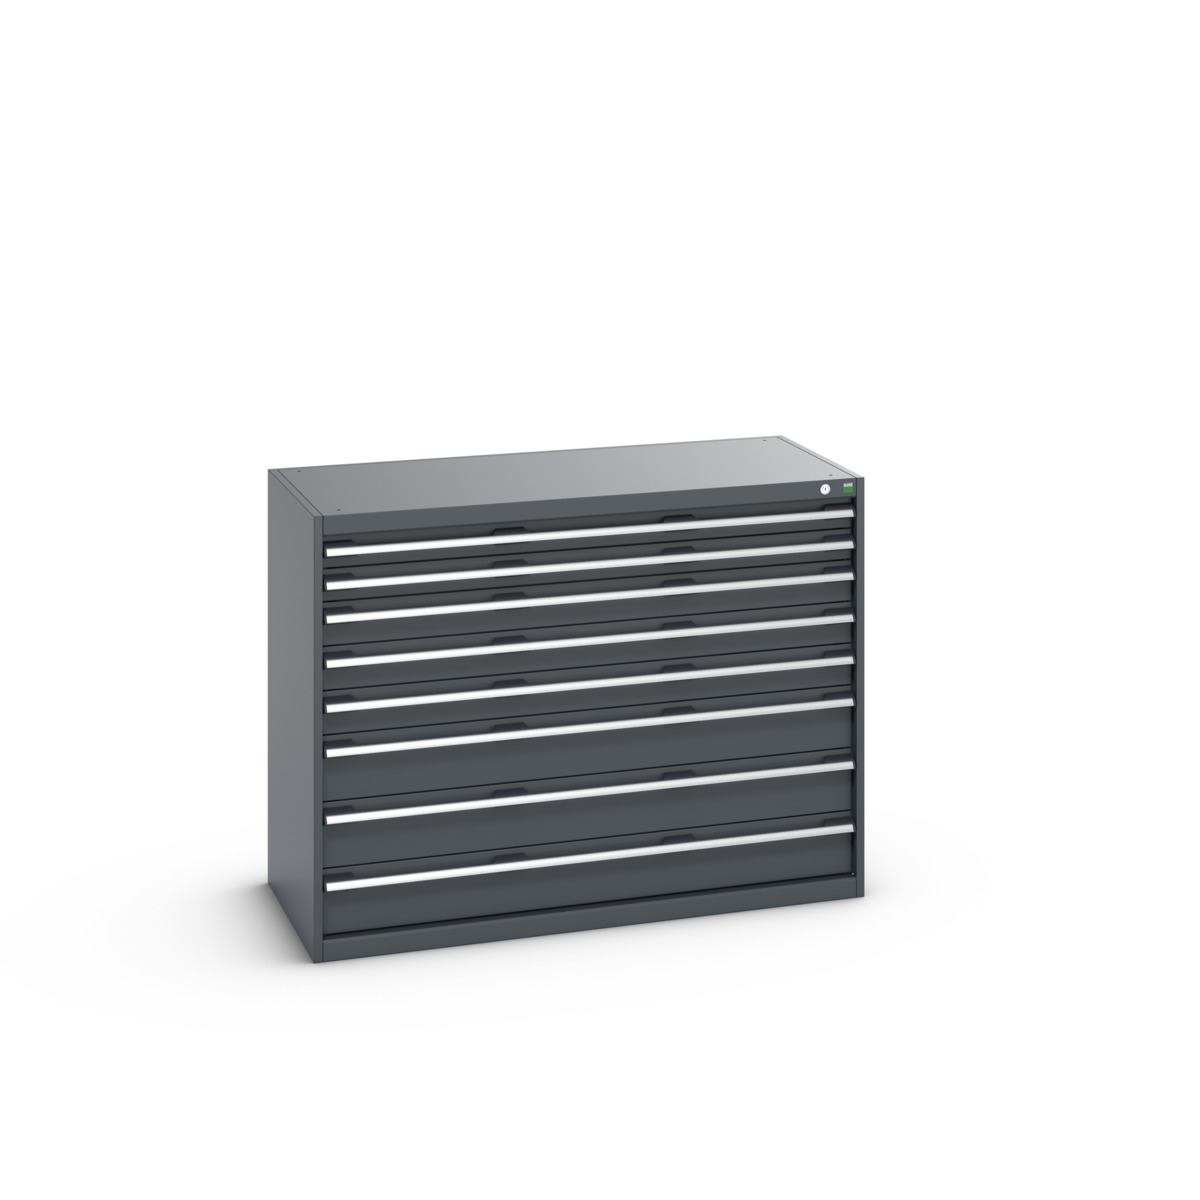 40022154.77V - cubio drawer cabinet